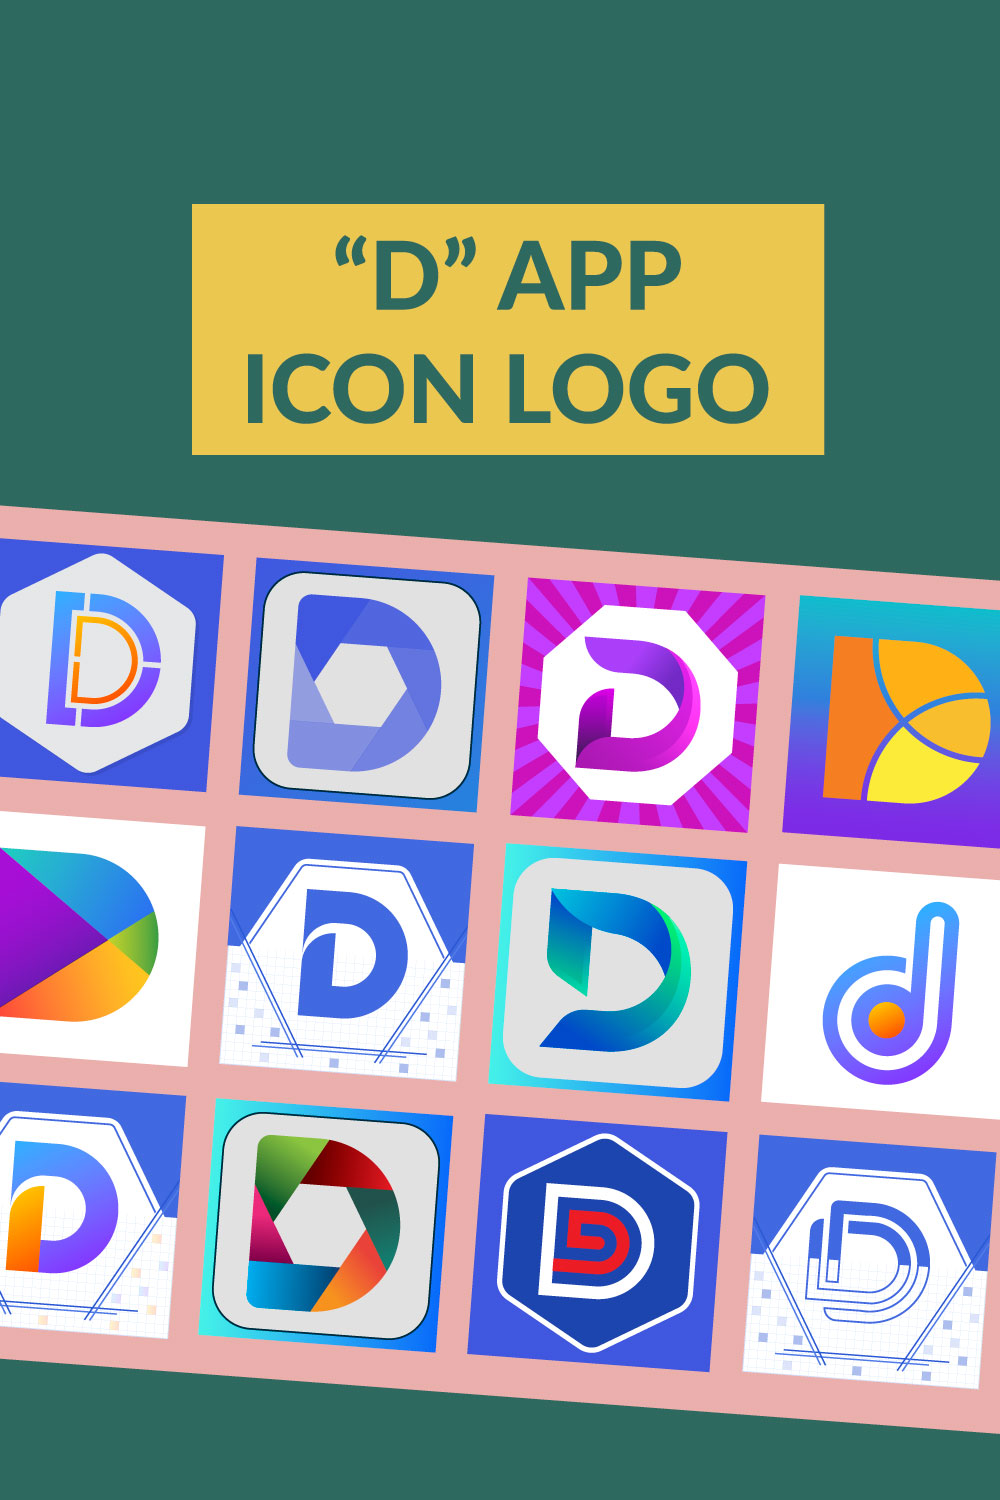 Premium Set of "D" App Icon - pinterest image preview.